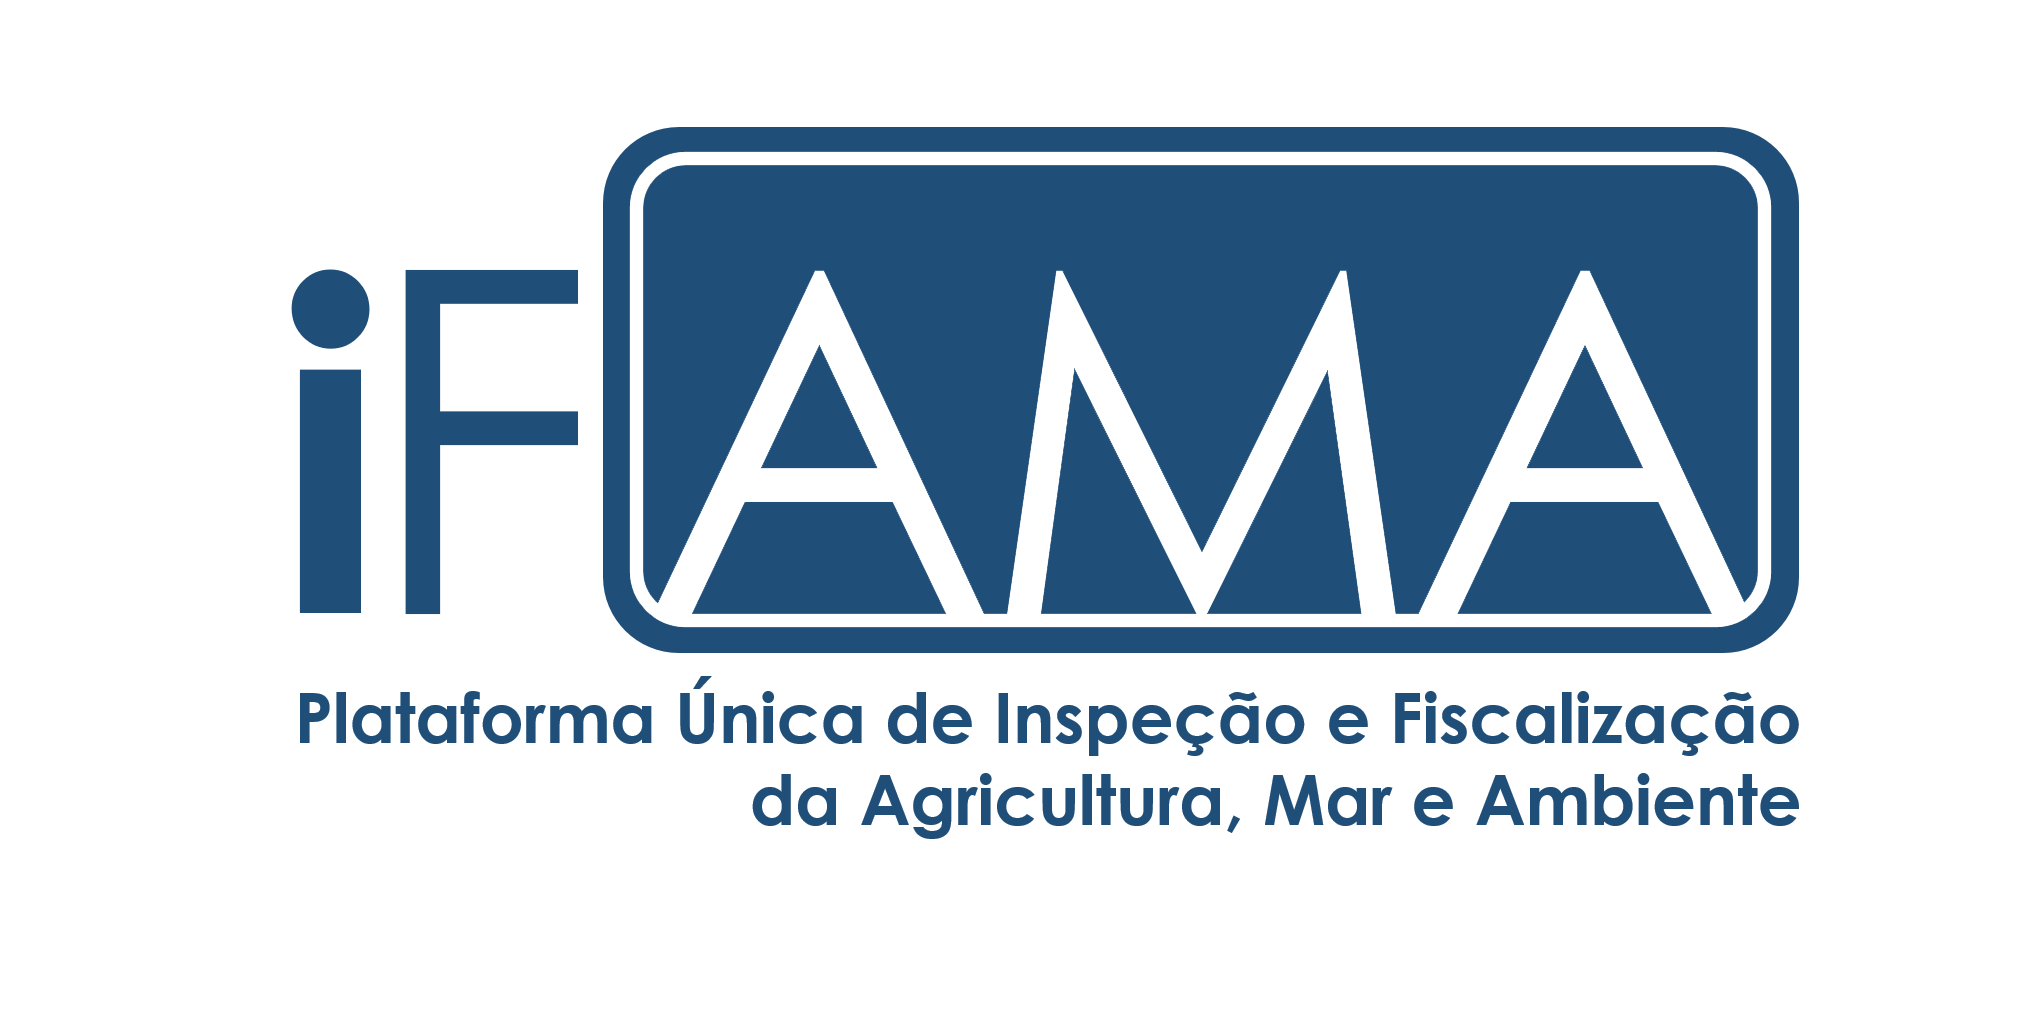  iFAMA - Plataforma Única de Inspeção e Fiscalização da Agricultura, Mar e Ambiente 